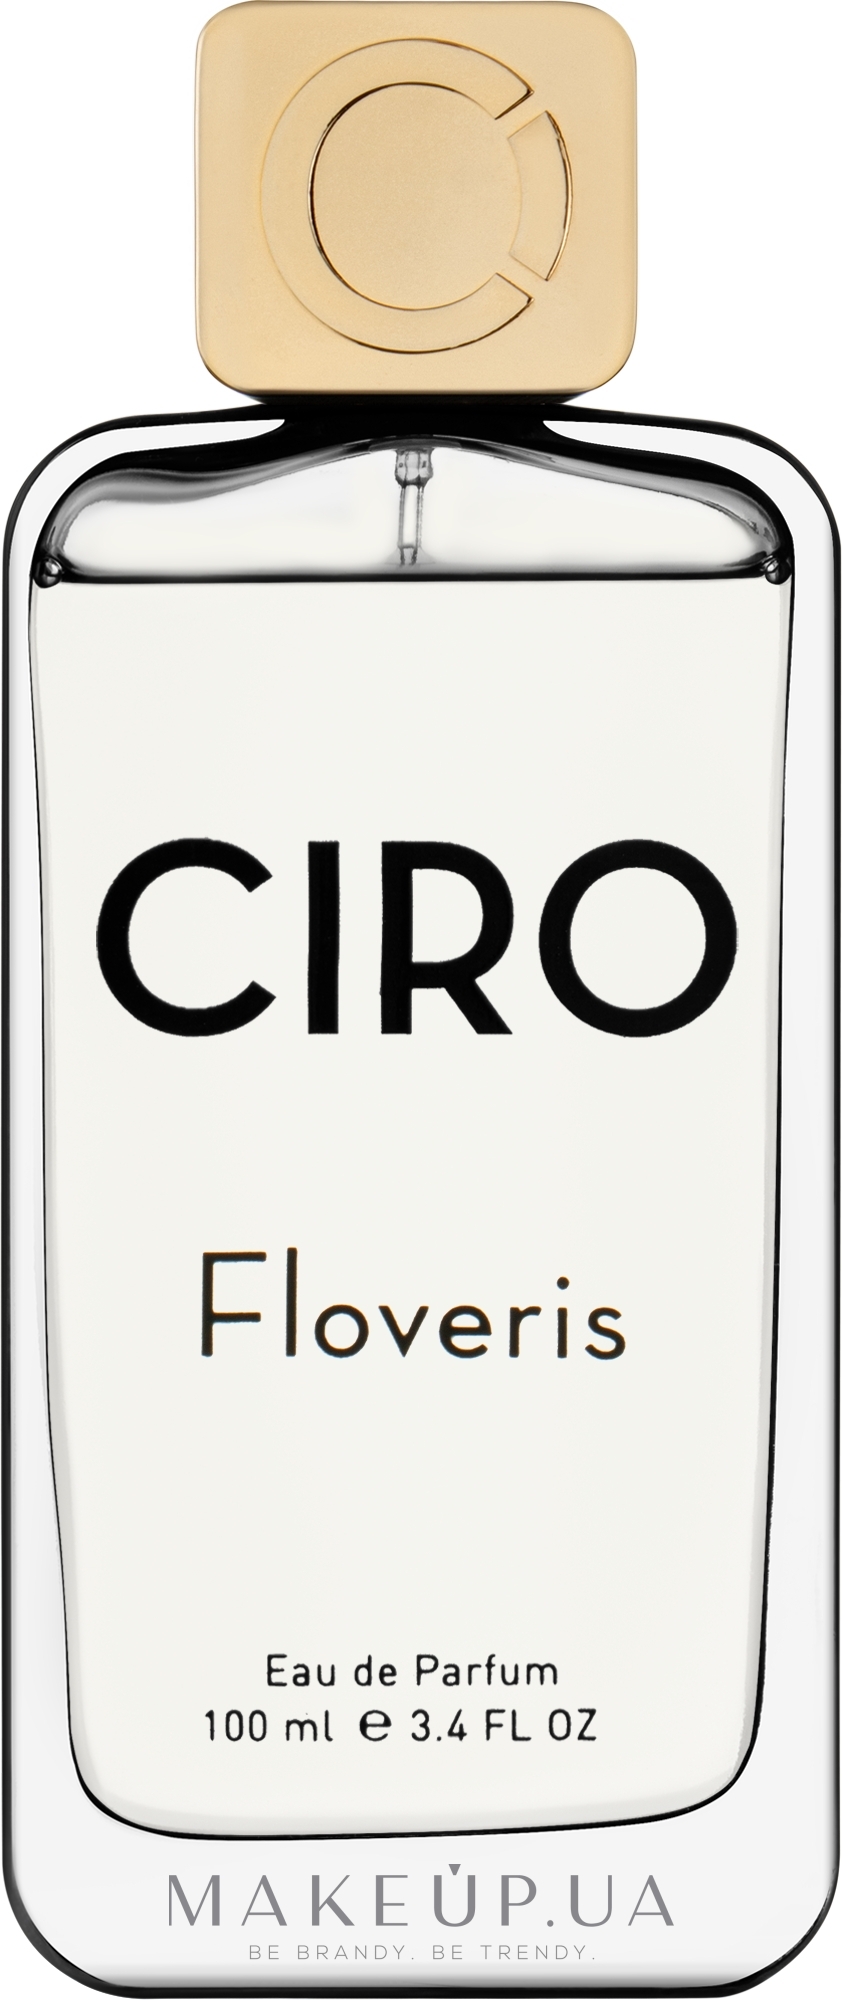 Ciro Floveris - Парфюмированная вода: купить по лучшей цене в